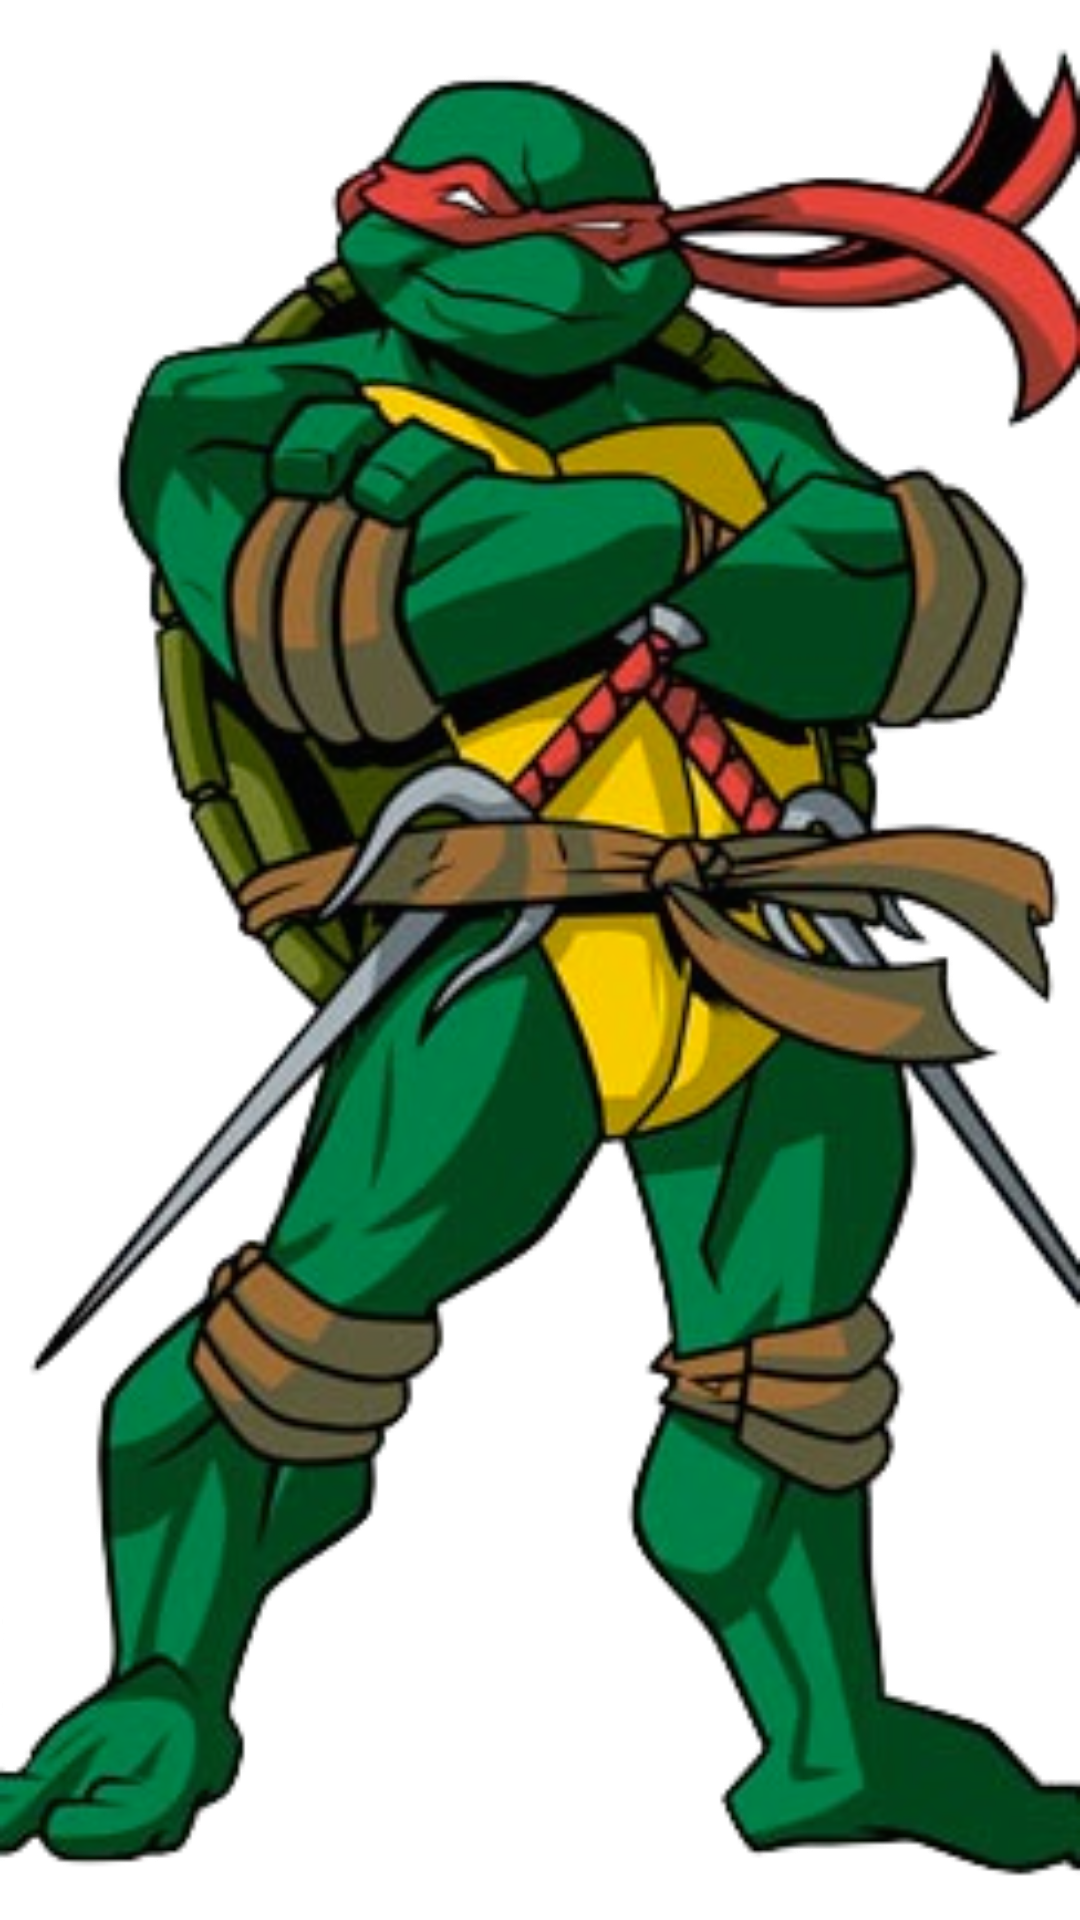 Raphael - Teenage Mutant Ninja Turtles - Early 